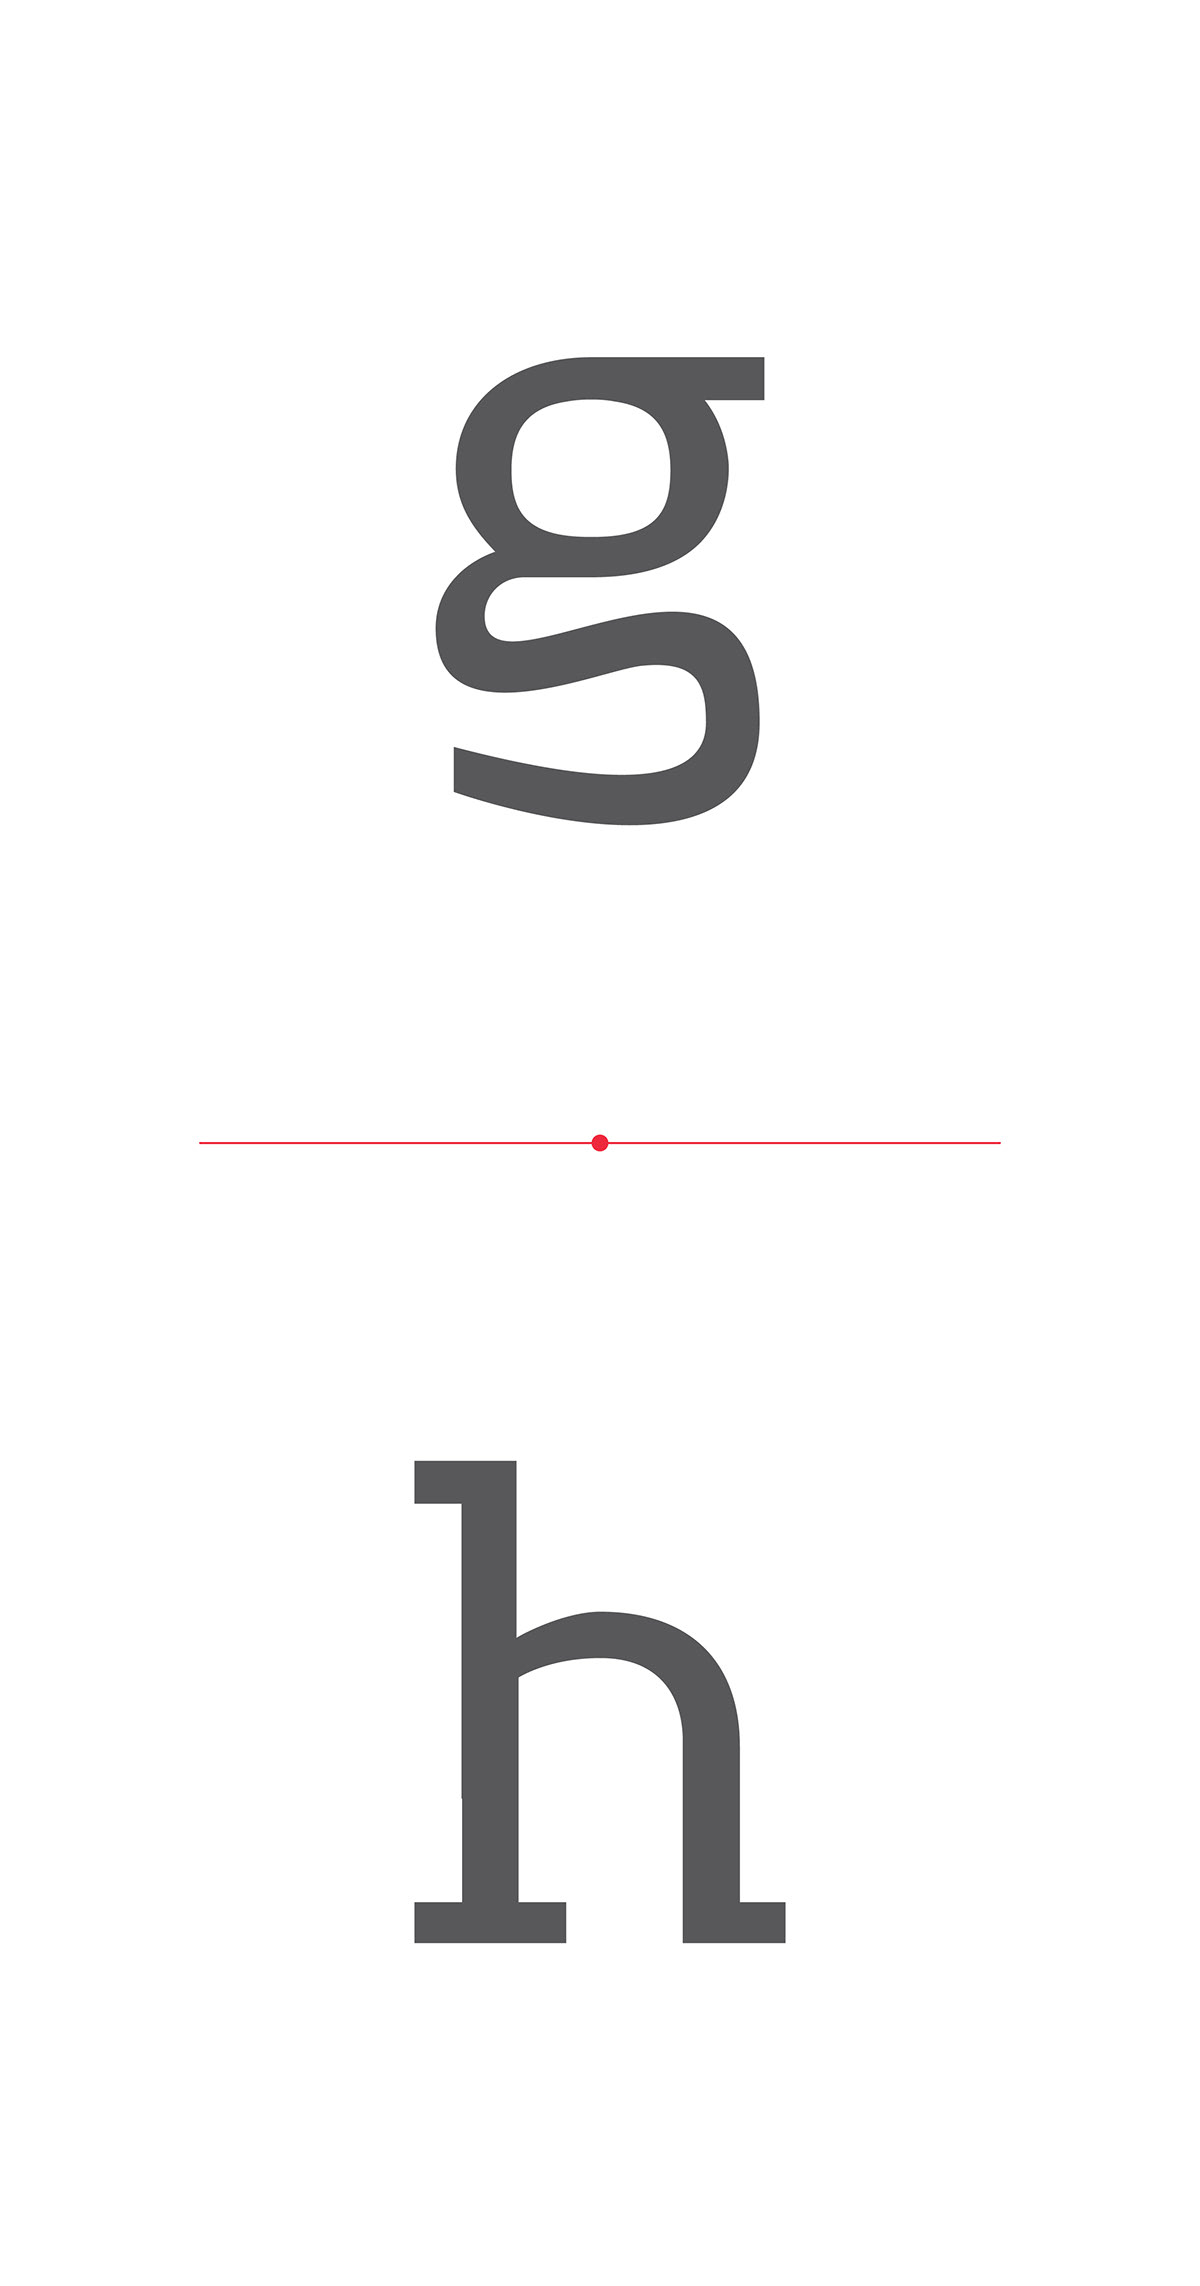 kello font Typeface typo Custom könyvtár könyvtárellátó Unique design graphic spring